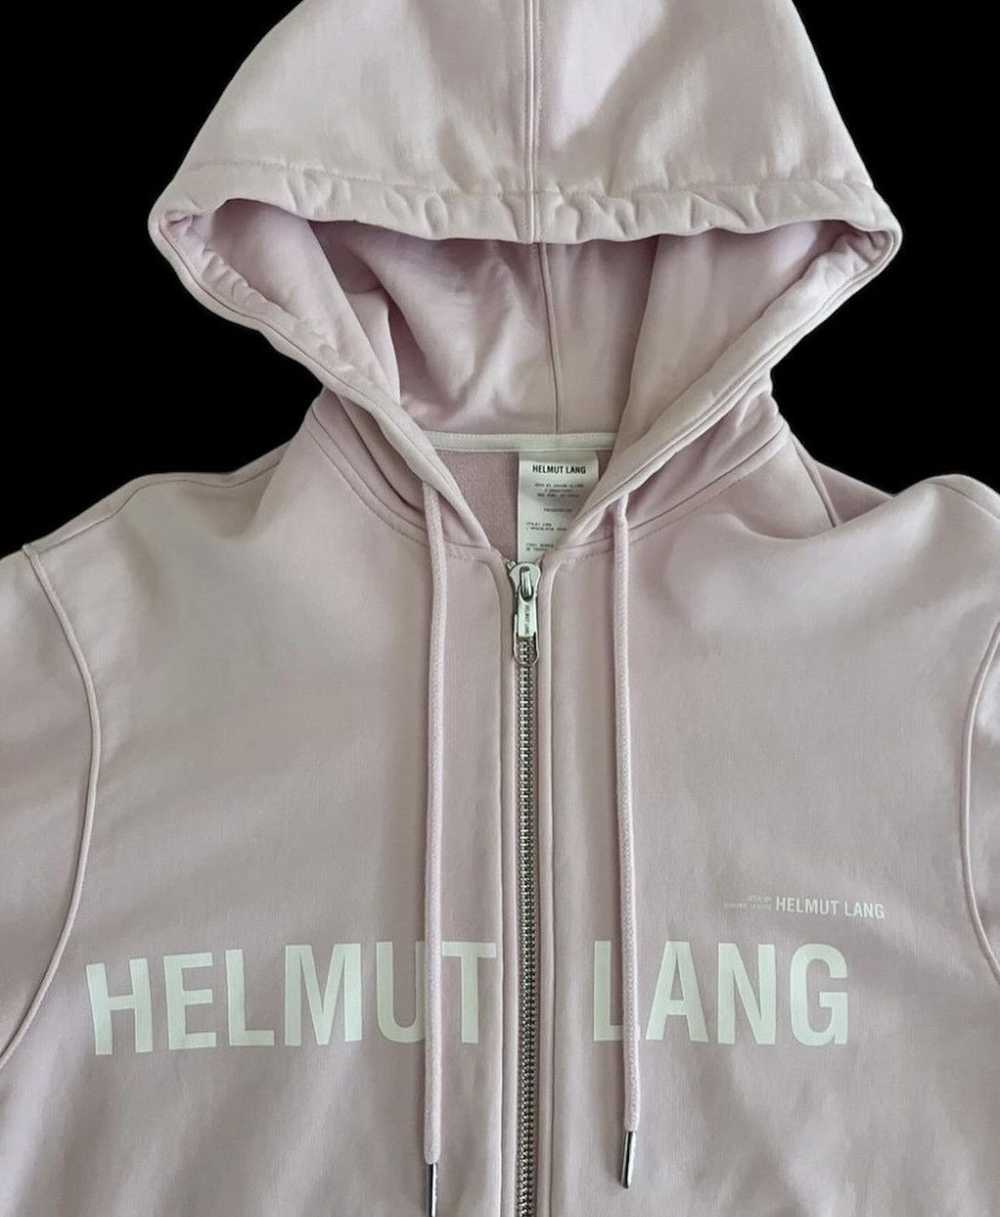 Helmut Lang helmut lang pink zip up hoodie - image 3